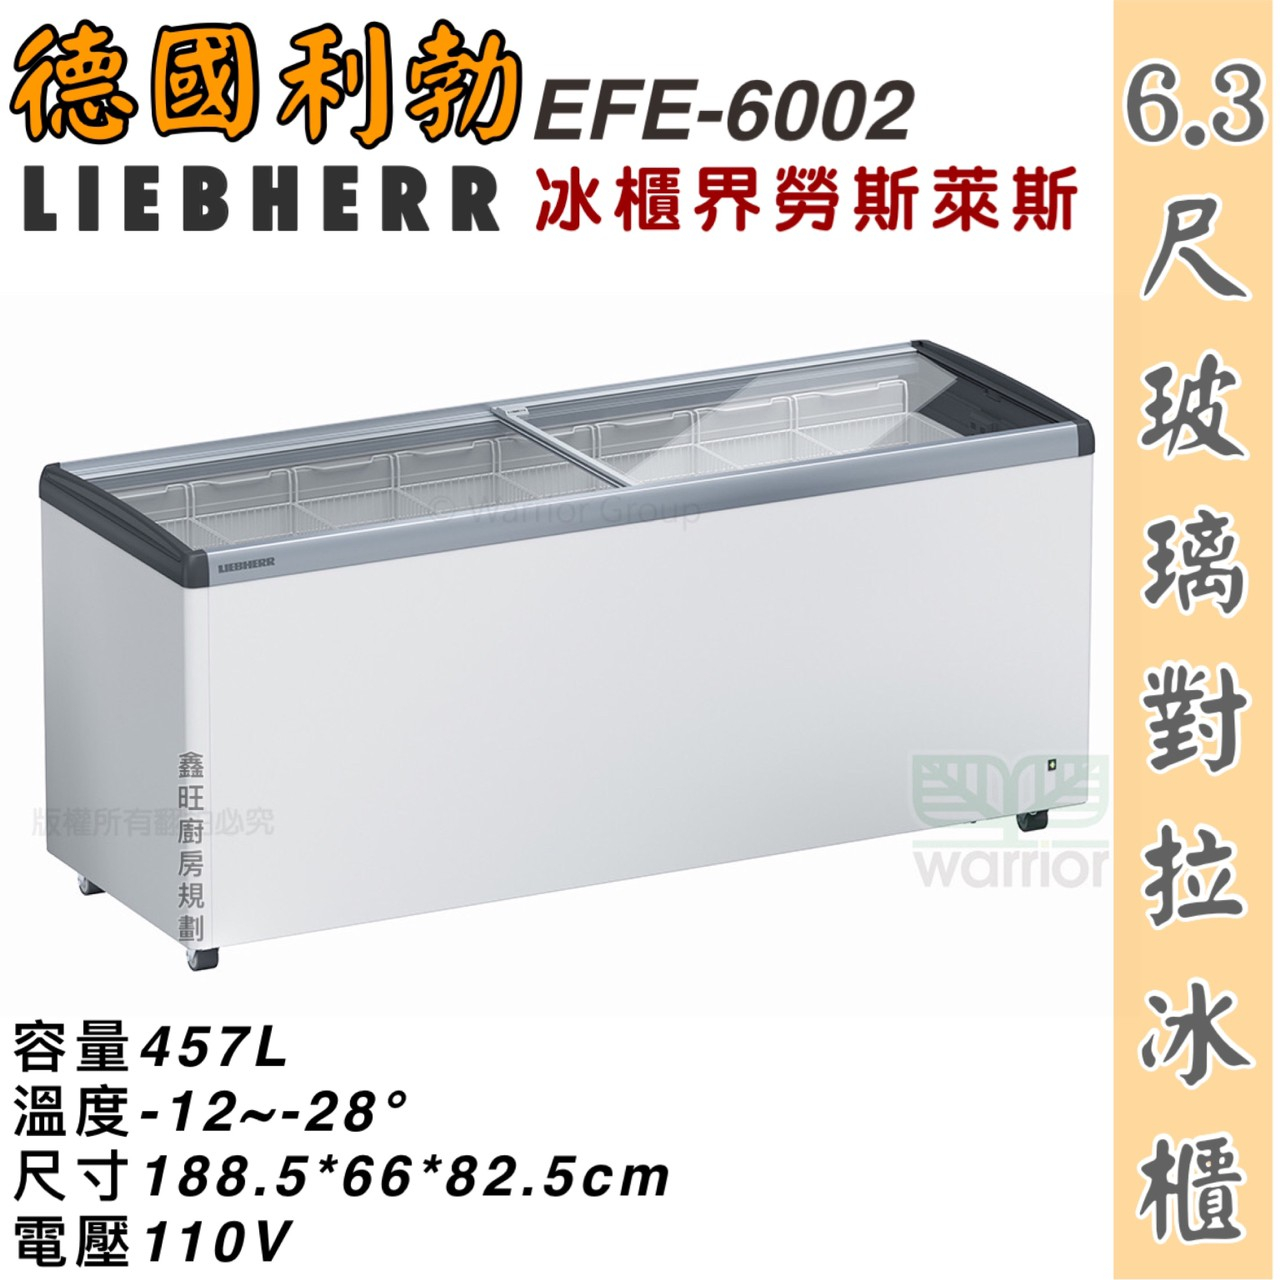 鑫旺廚房規劃_EFI-6002 利勃 6.3尺玻璃對拉冰櫃/457公升/冷凍冰櫃/臥式冰櫃/冷凍櫃